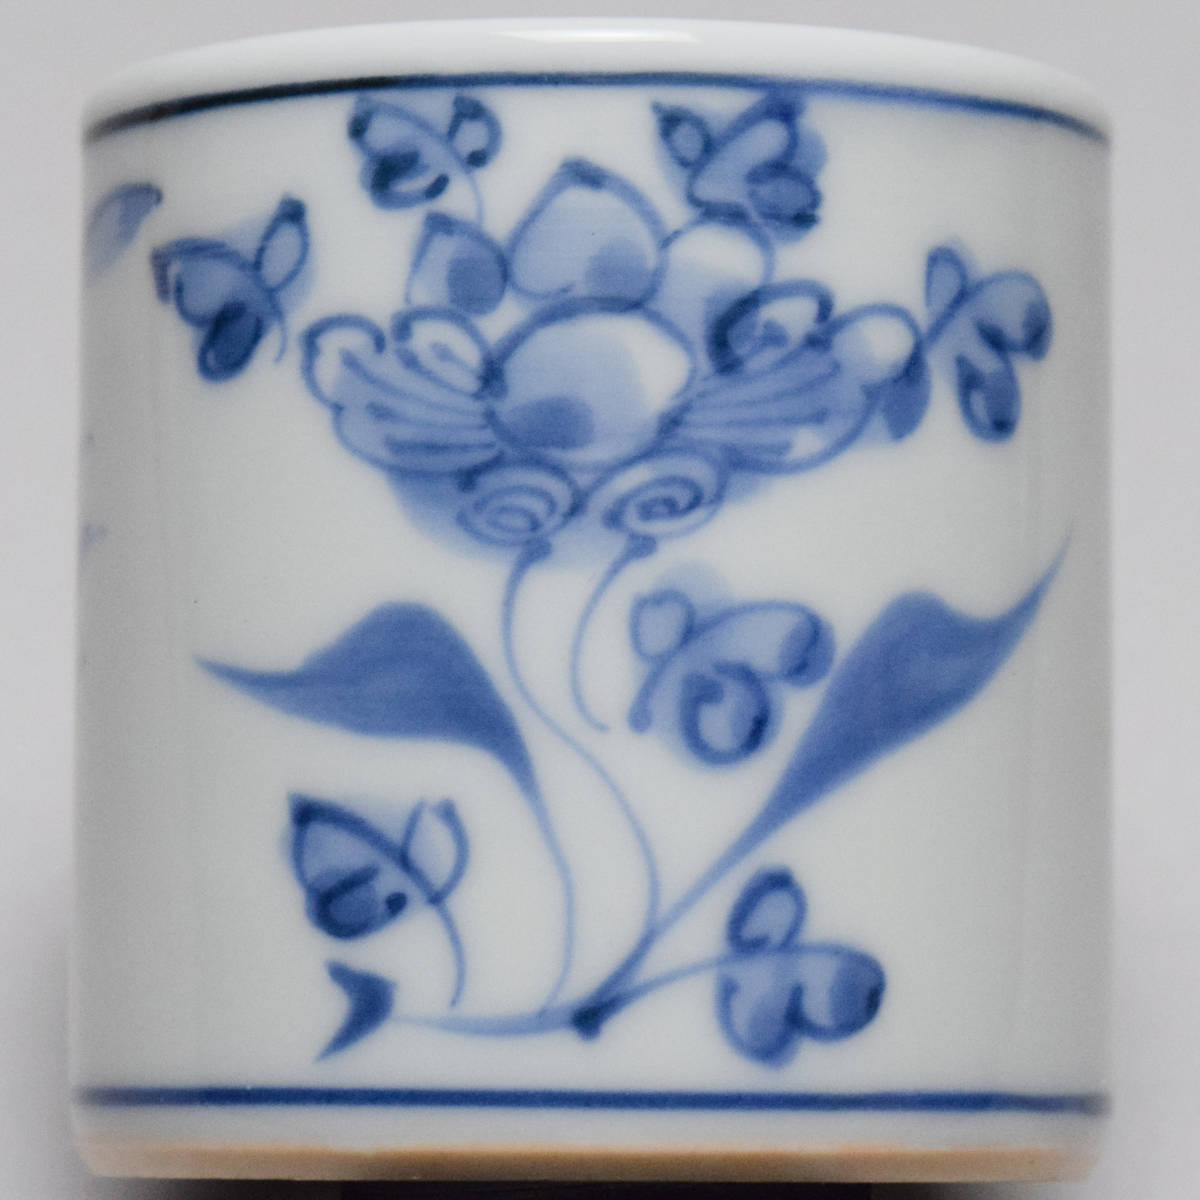 [...].... белый фарфор с синим рисунком цветы и птицы документ крышка .* вместе коробка чайная посуда [b-025]